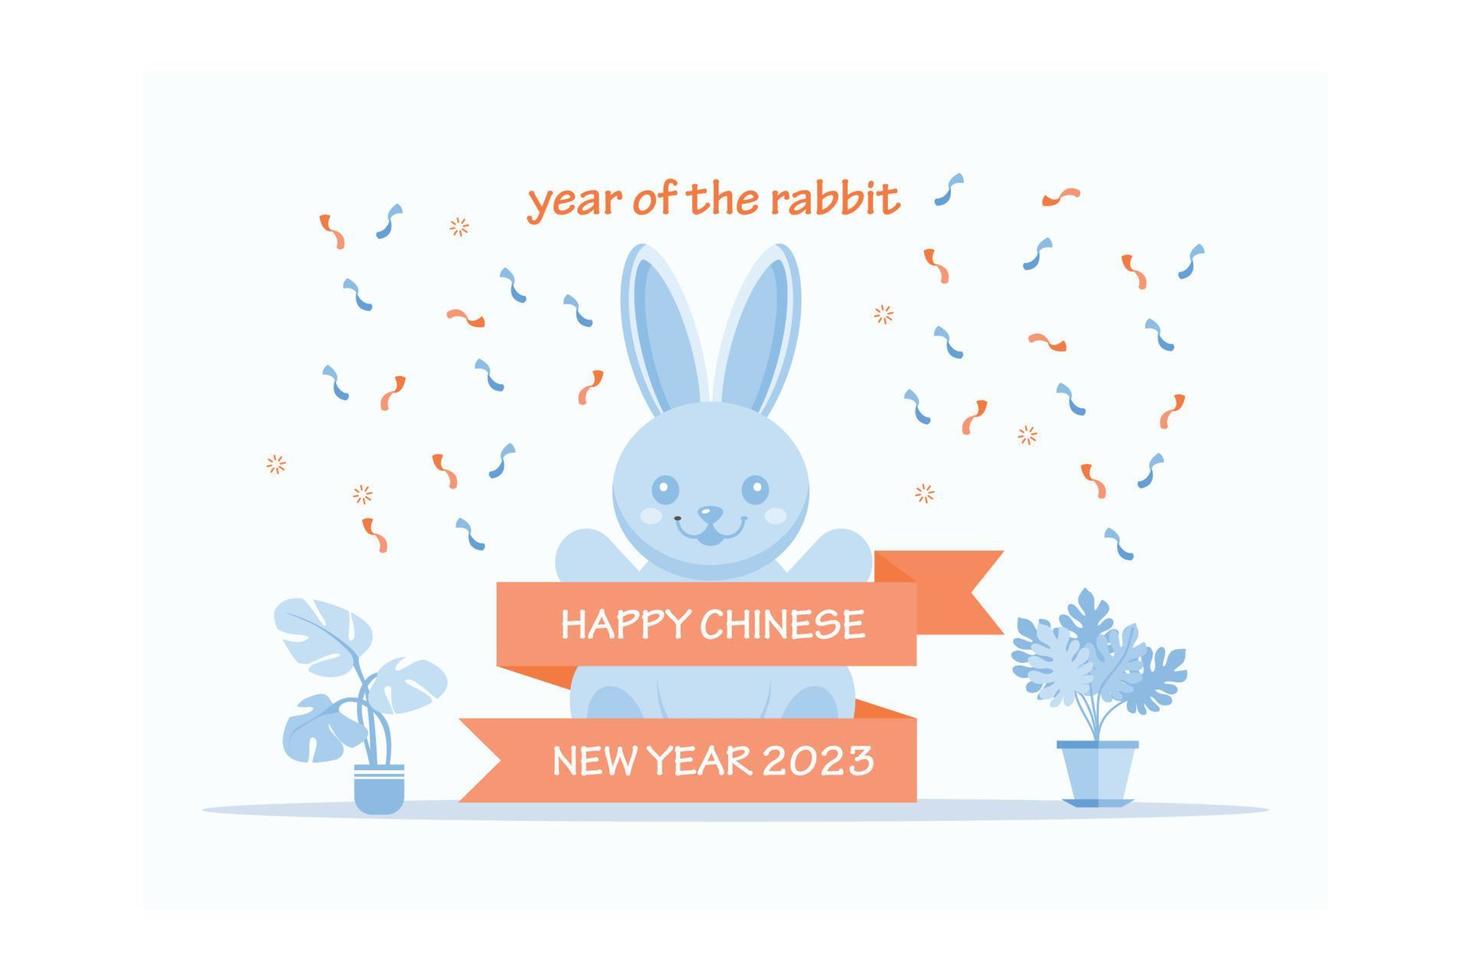 año nuevo chino 2023, el año del conejo, personajes de arte de línea roja y dorada, elementos asiáticos simples dibujados a mano con artesanía, ilustración moderna de vector plano